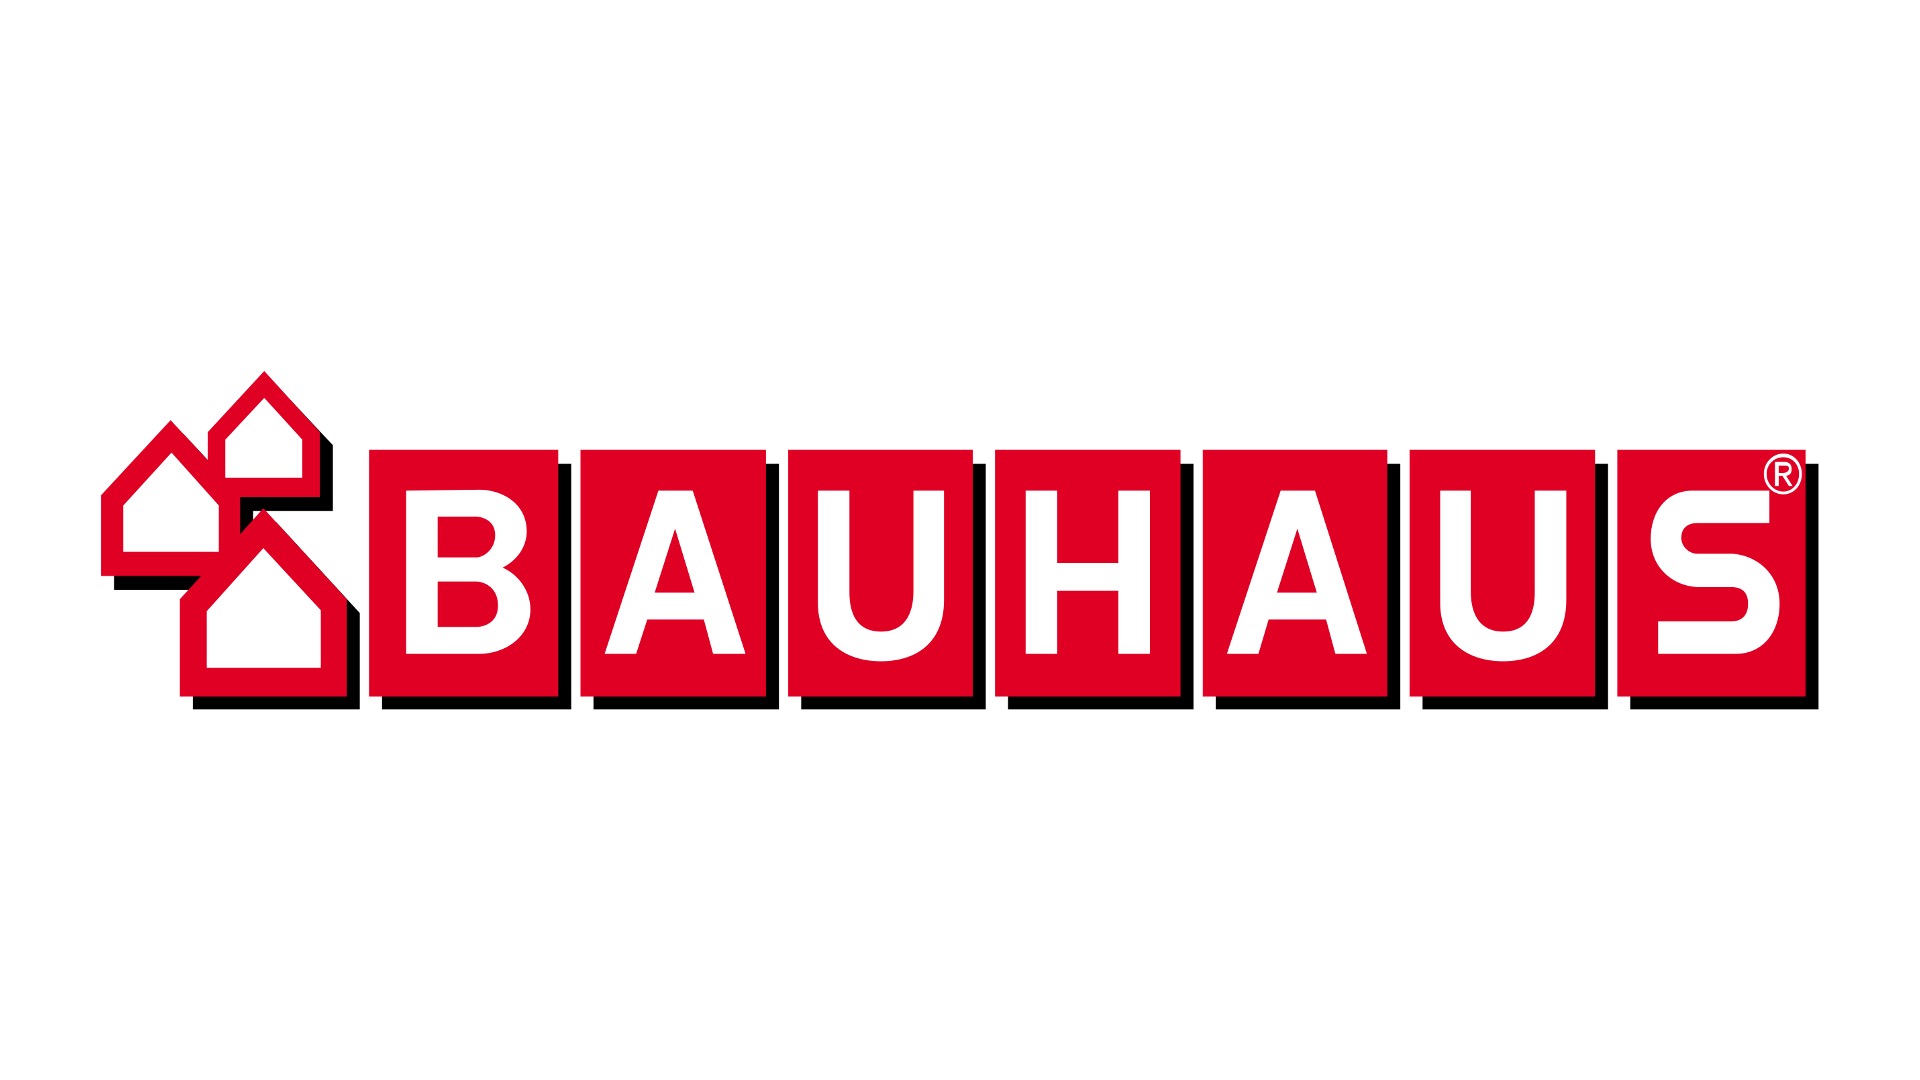 Bauhaus: Ein führender europäischer Baumarkt mit breitem Sortiment